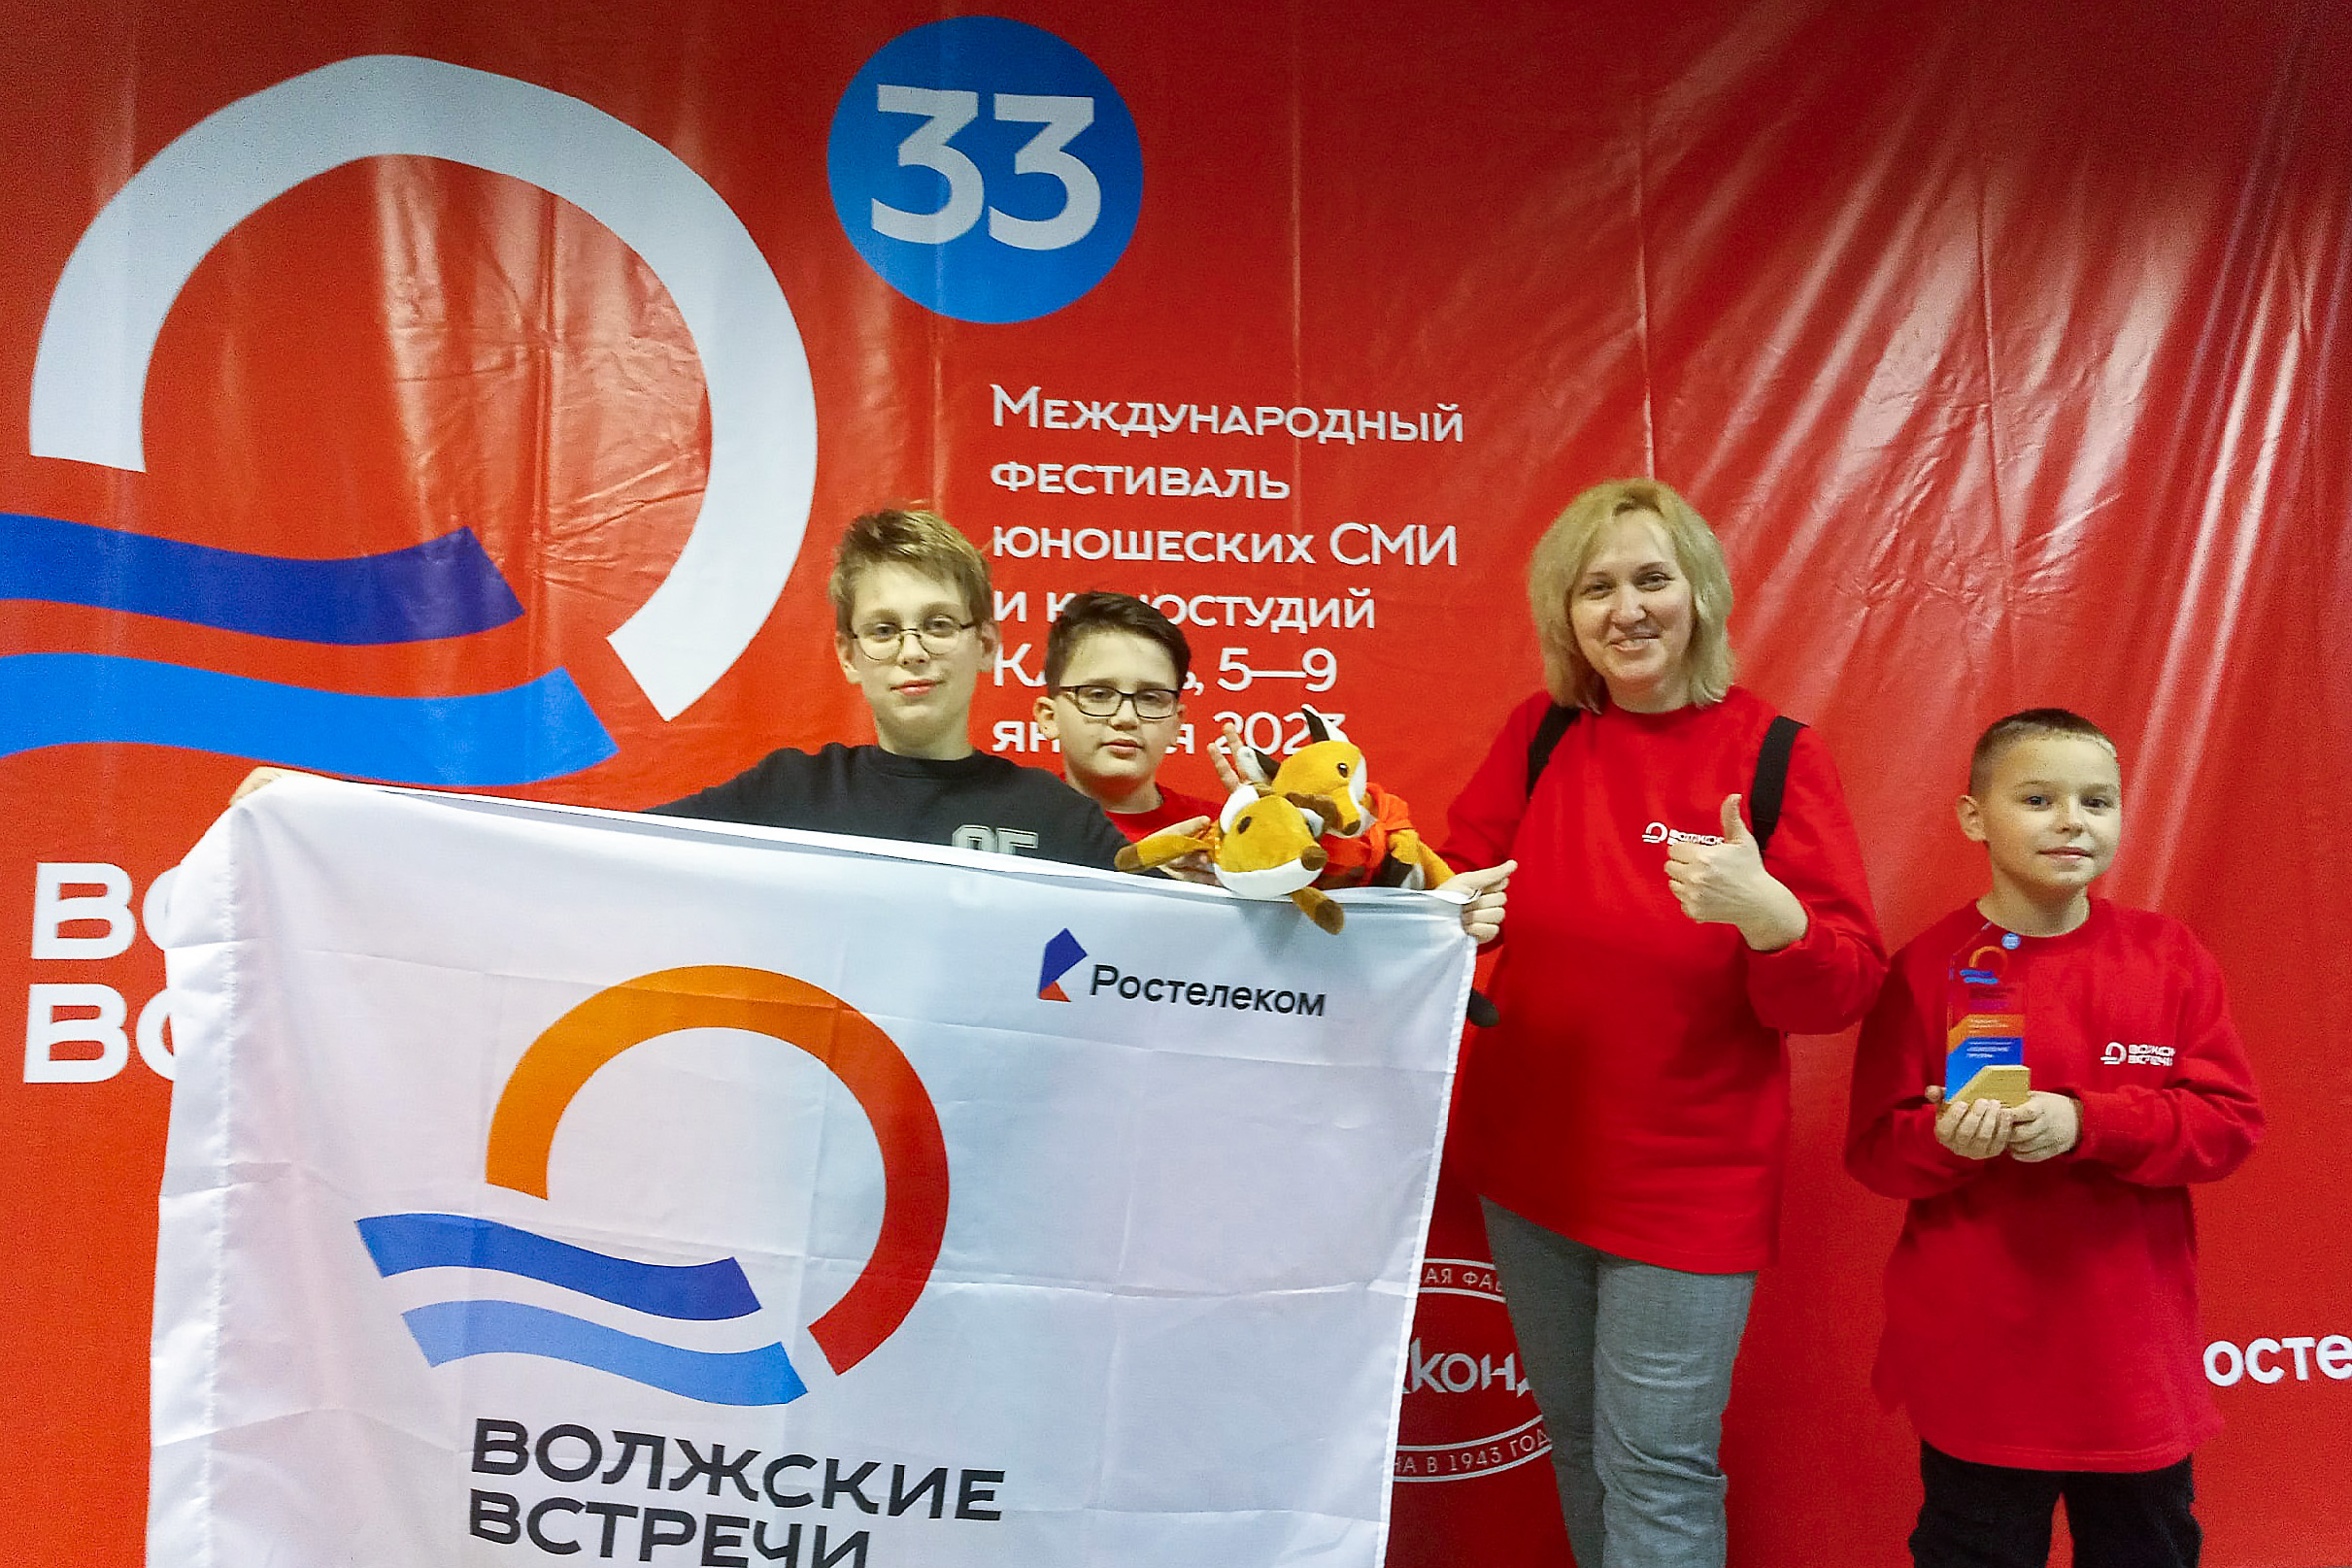 Белорусы приняли участие в зимнем этапе Международного фестиваля юношеских СМИ и киностудий "Волжские Встречи-33"